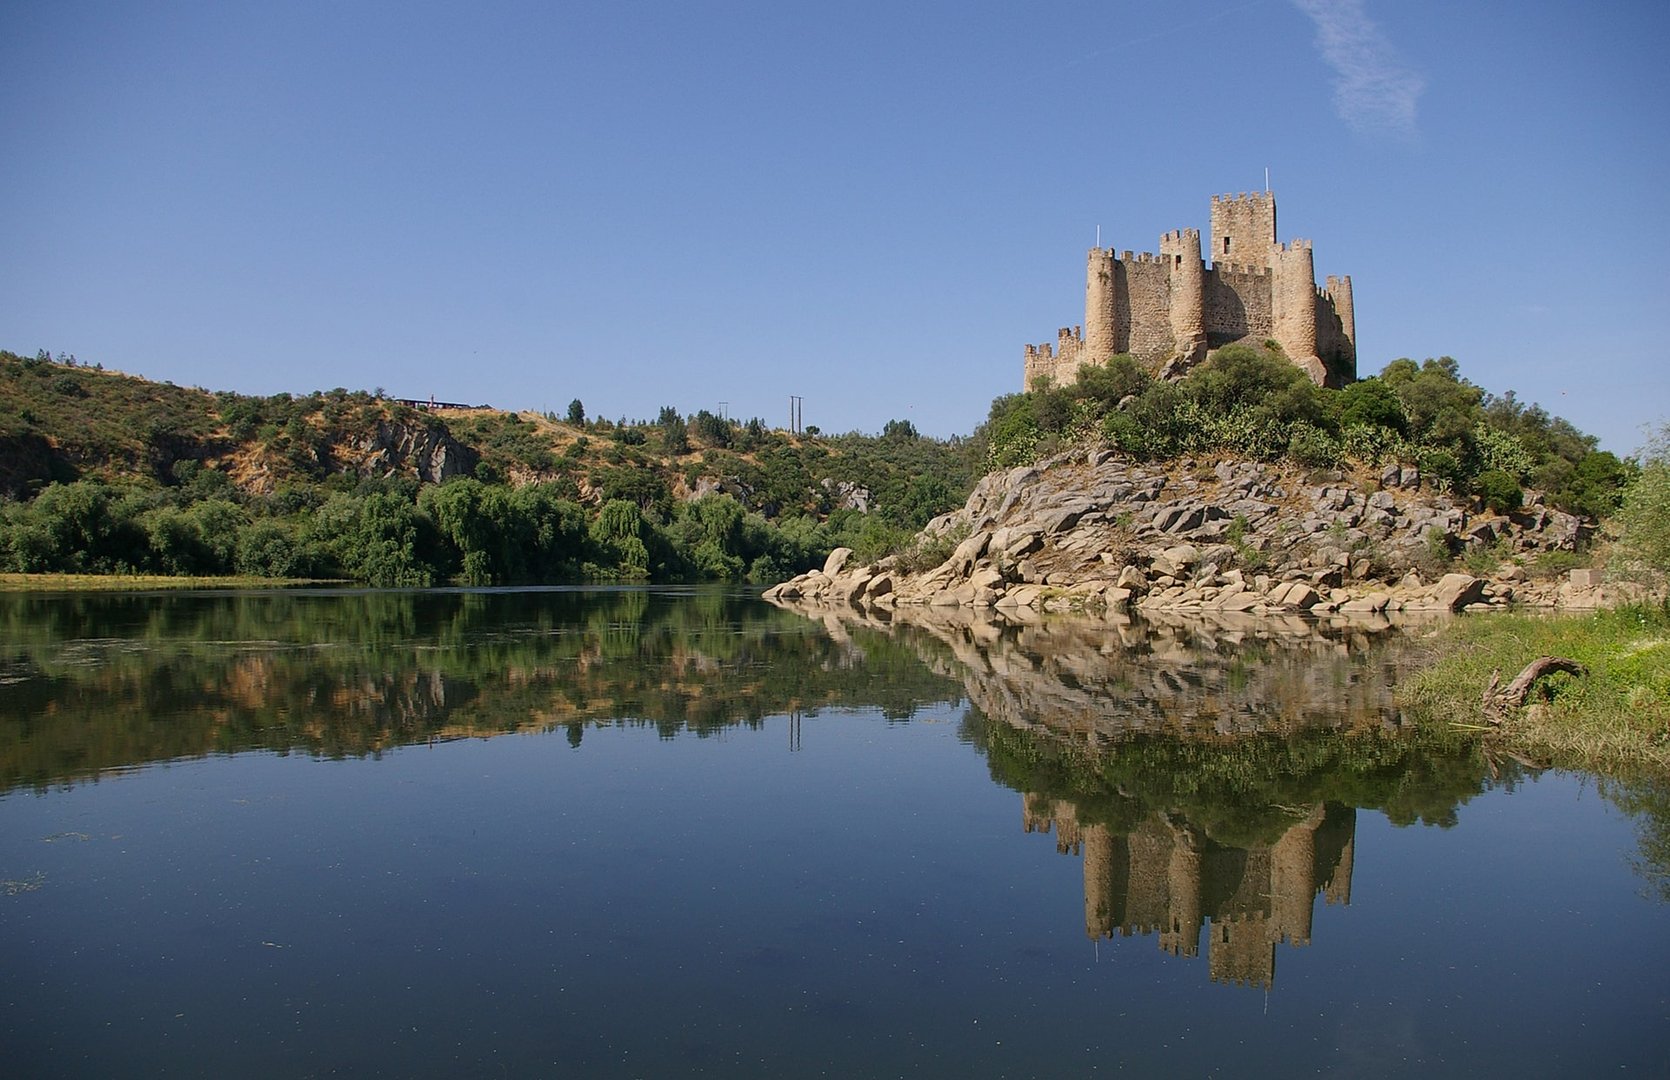 O Castelo de Almourol foi erguido num cenário de enorme beleza paisagística